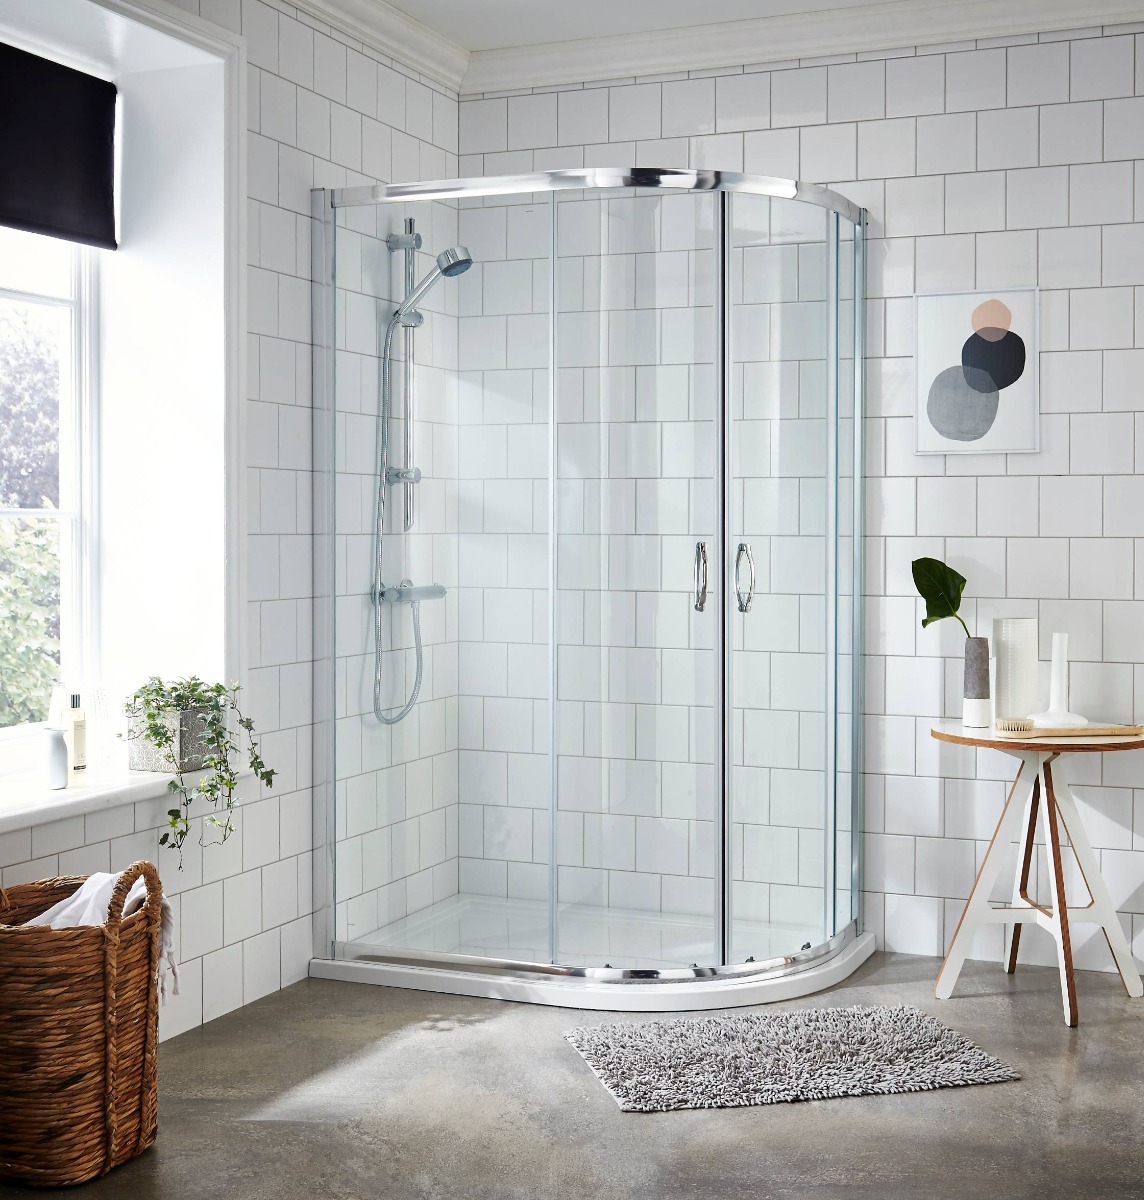 offset quadrant shower in white tiled bathroom